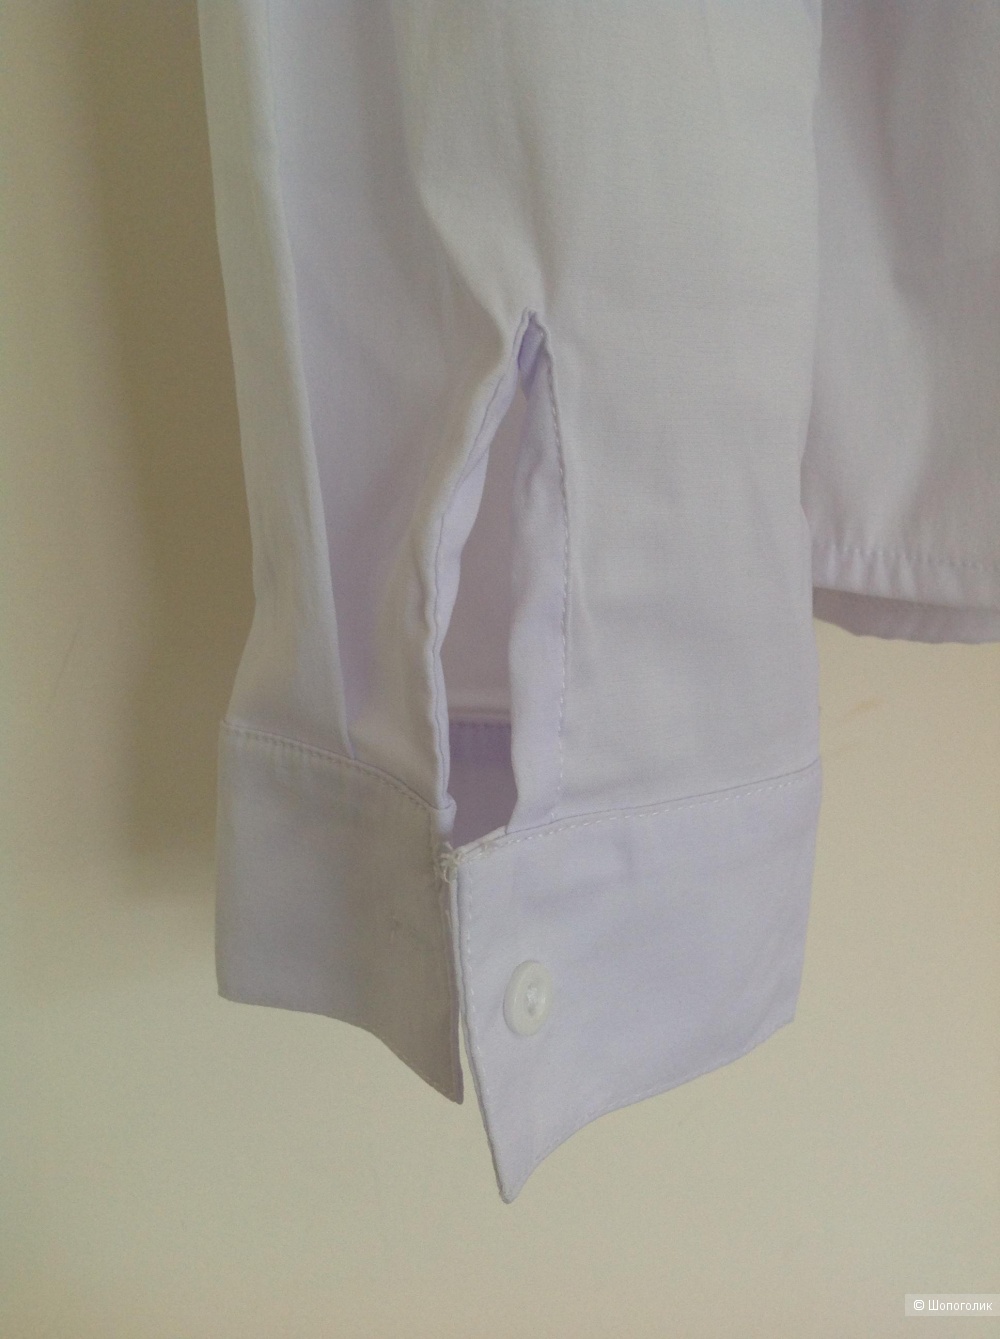 Рубашка/ блузка Marimay, размер 56, на 48-50-52